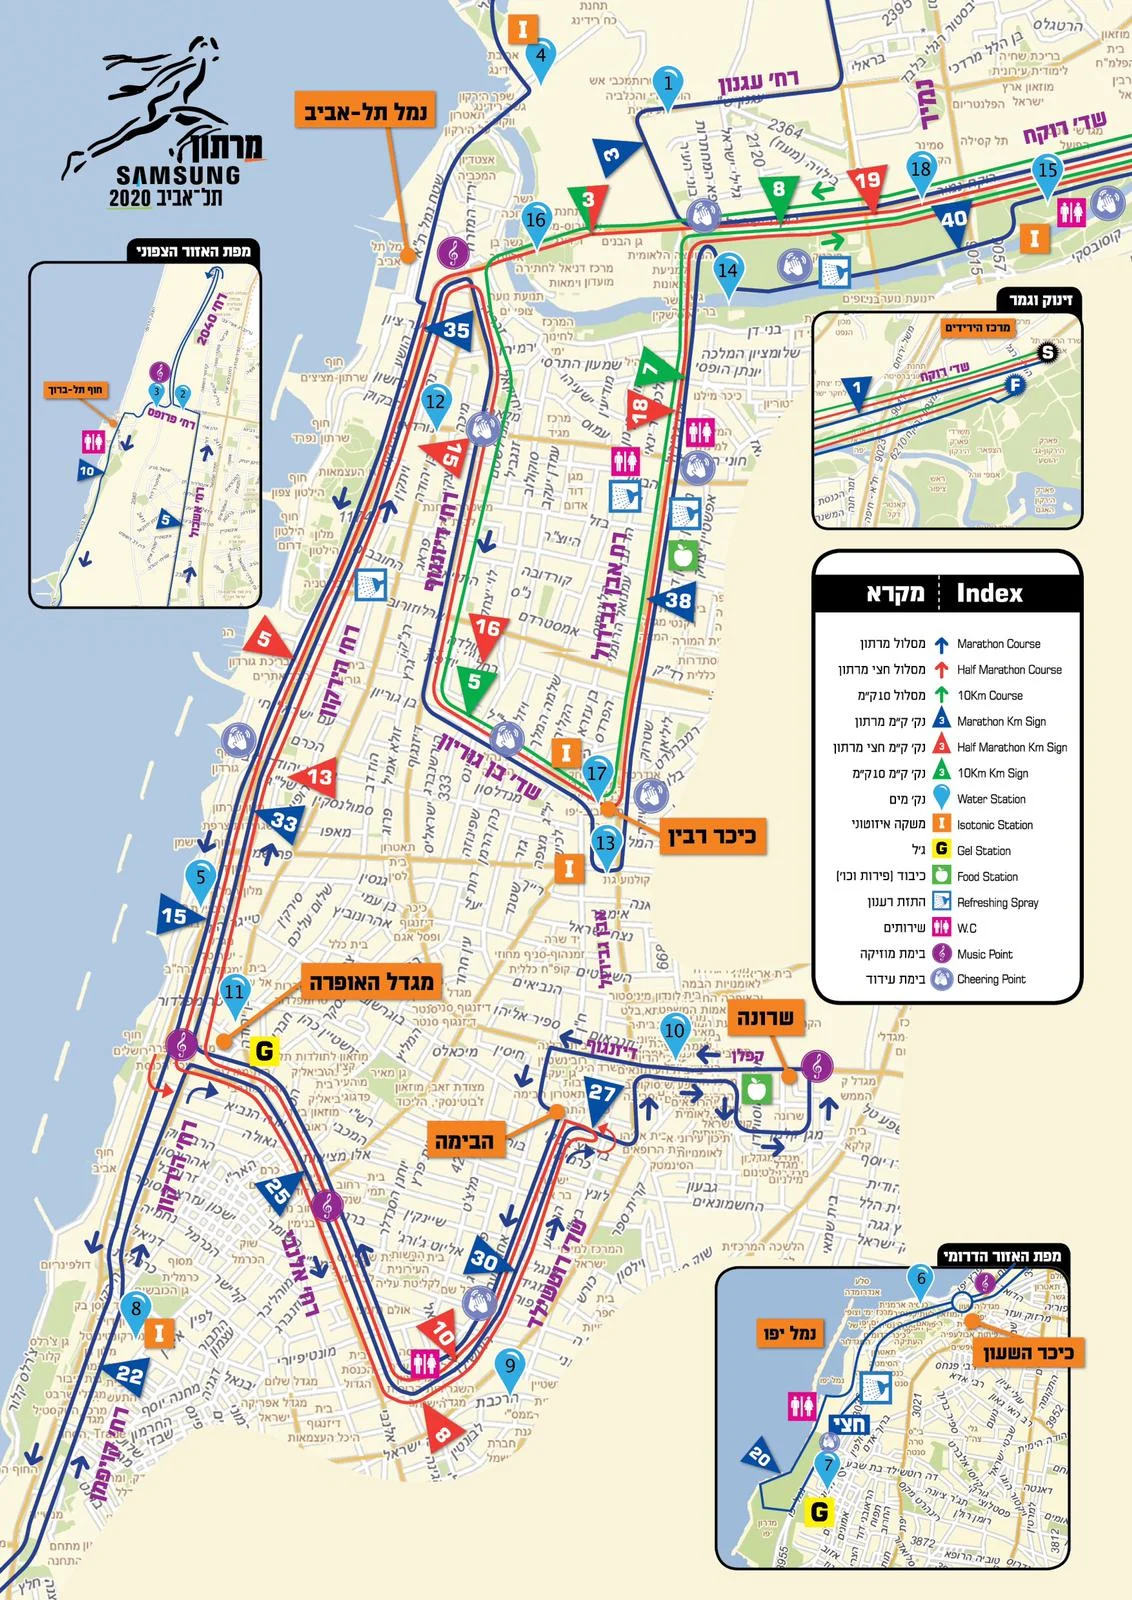 מרתון תל אביב 2020, מפת חסימות כבישים